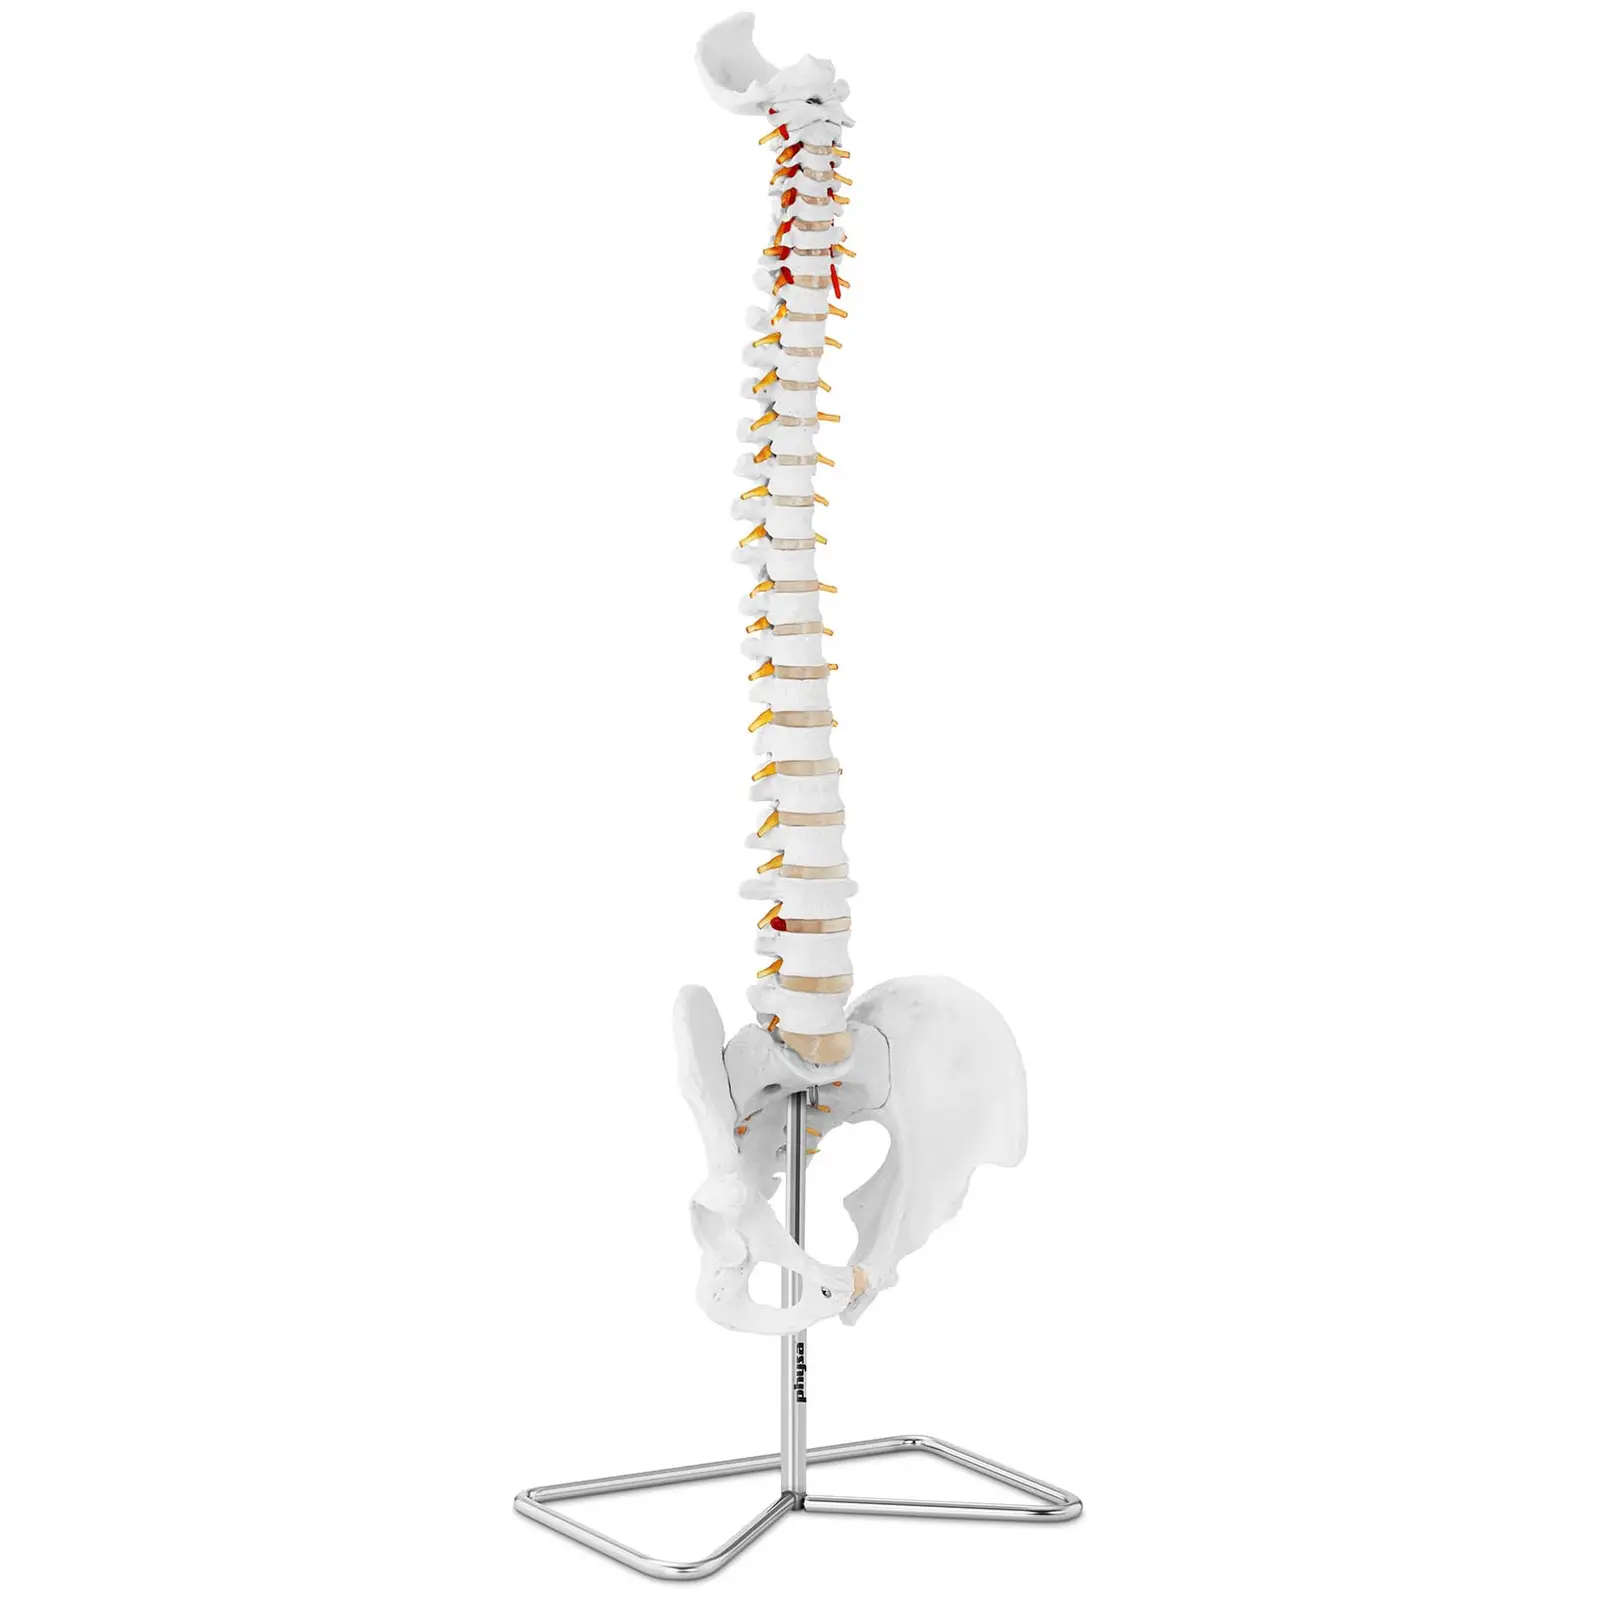 Modello anatomico colonna vertebrale cervicale con bacino - A grandezza naturale